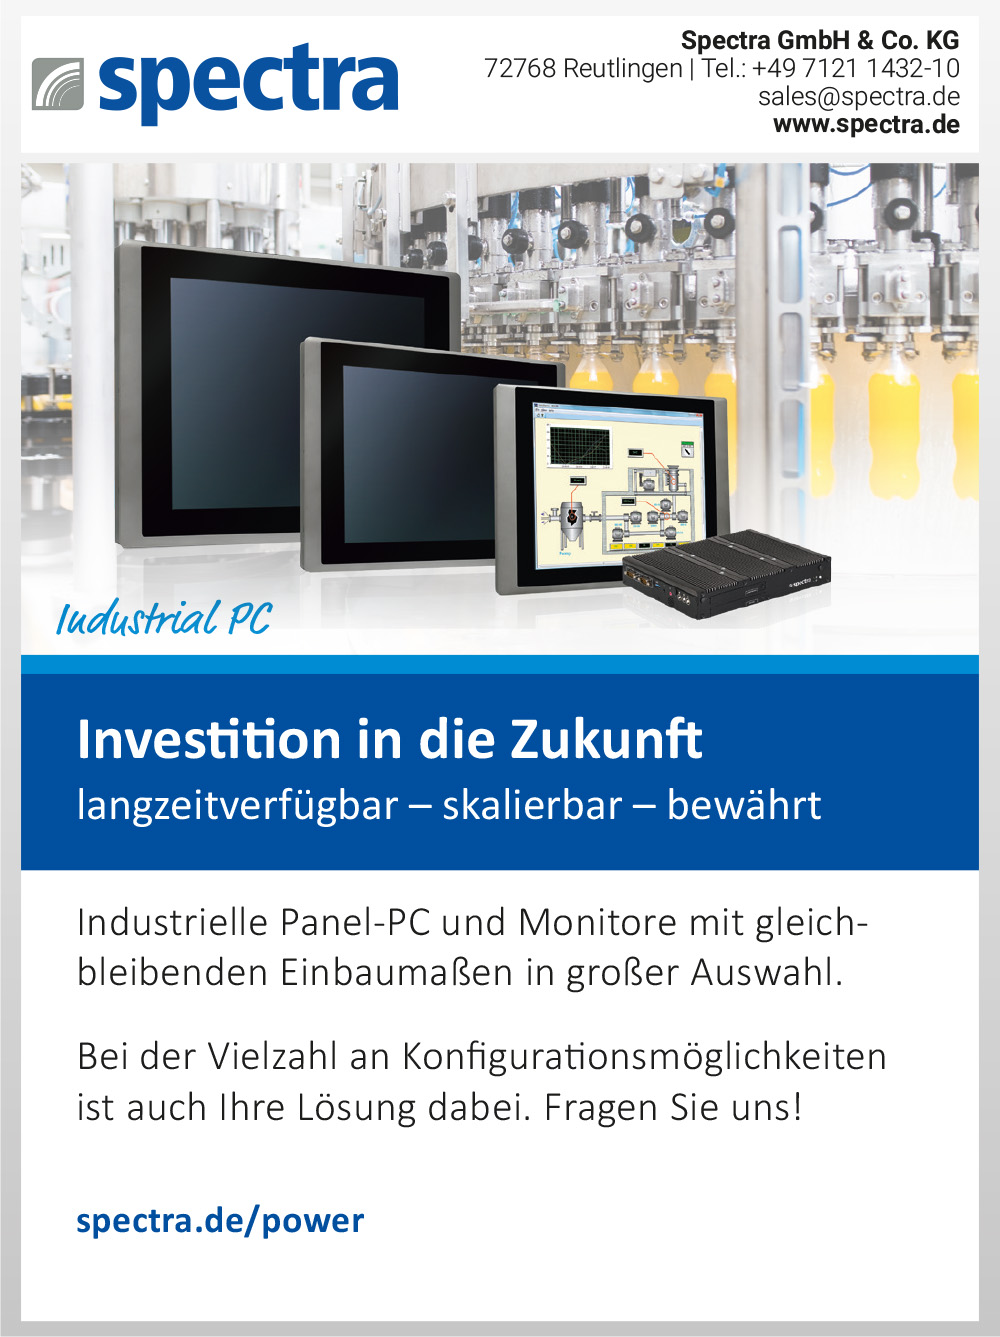 Produktübersicht – Spectra GmbH & Co. KG